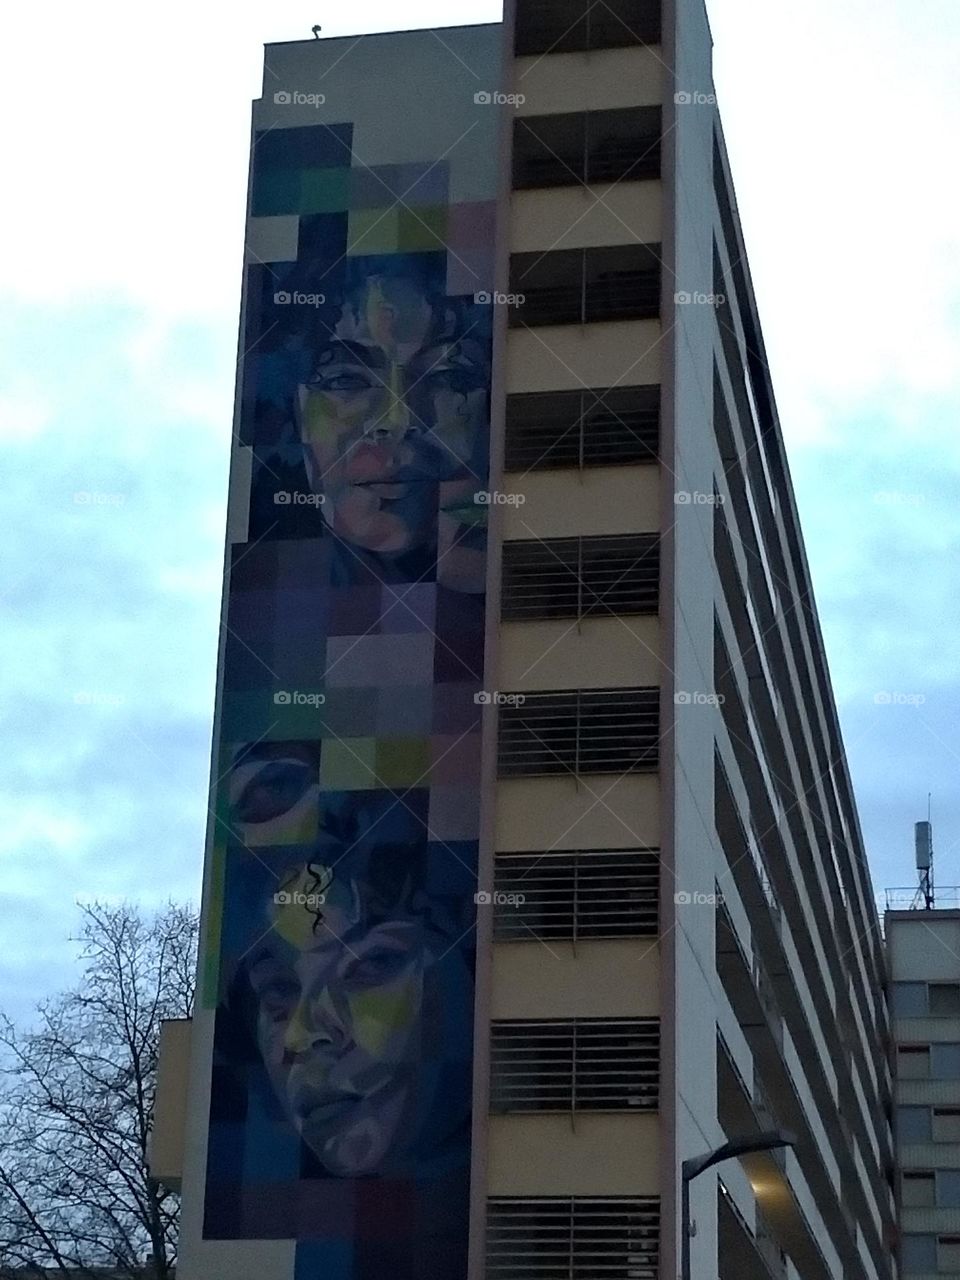 Giant graffiti woman portrait on building